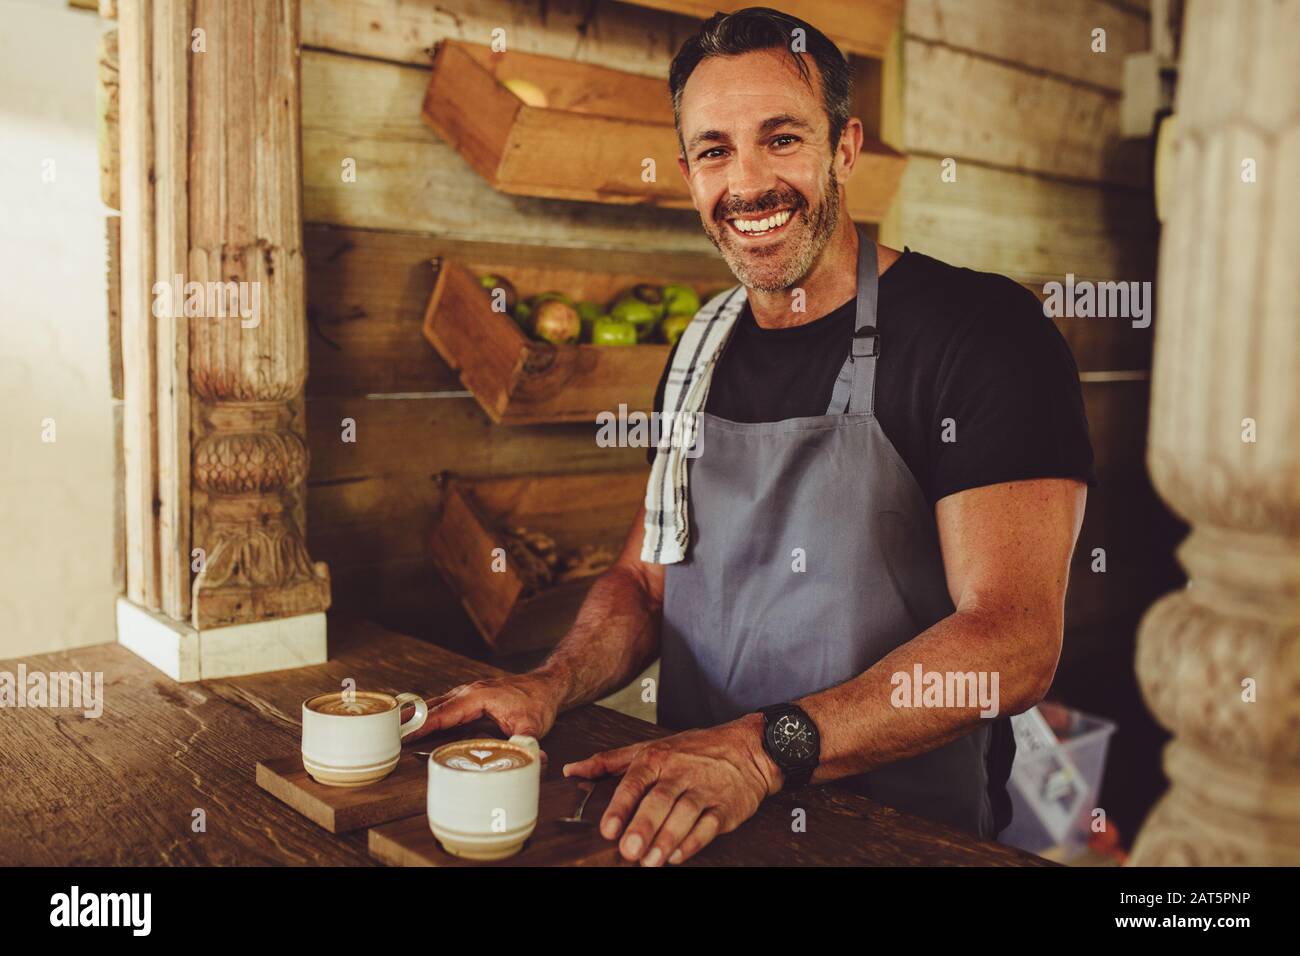 Ritratto di un barista maschile sorridente che serve caffè. Uomo che si trova dietro il bancone di un caffè che serve due tazze da caffè e sorridente. Foto Stock